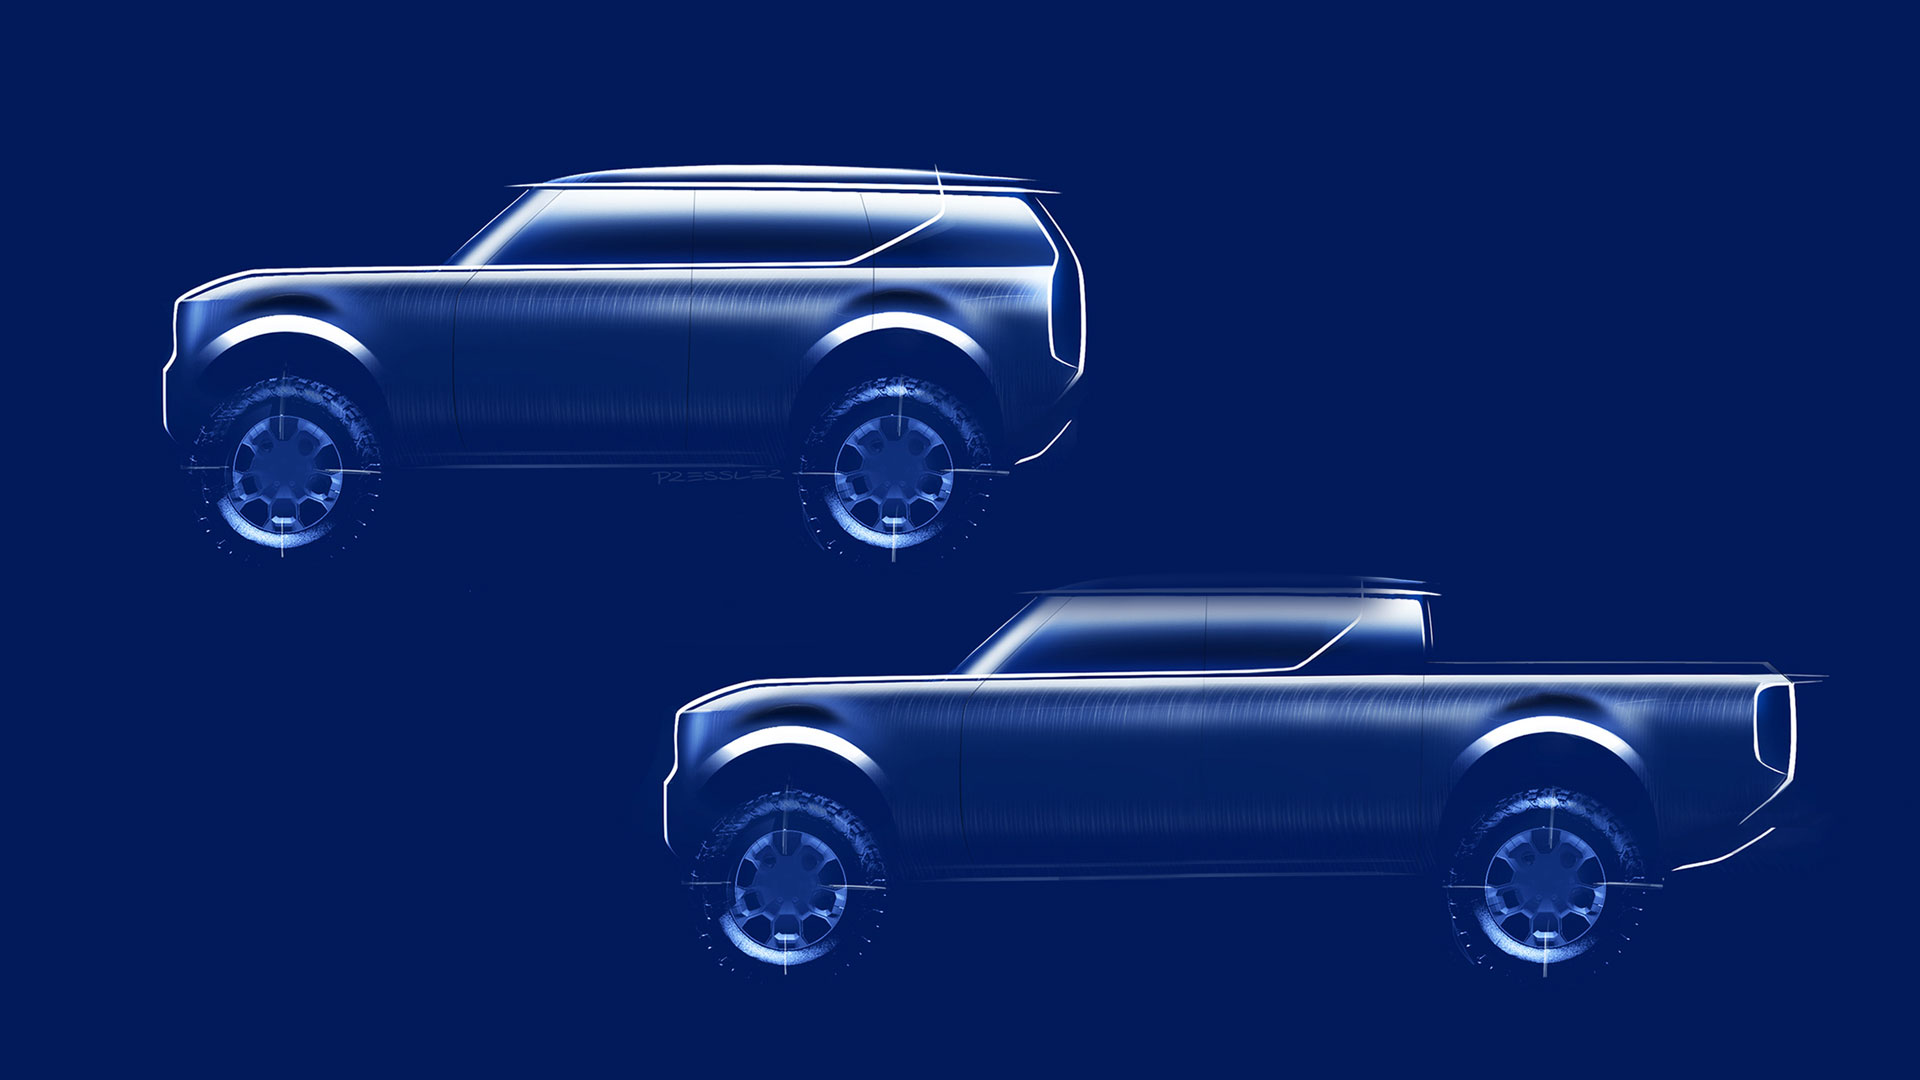 Scout:  Entwurf der neuenVW-Marke für elektrische Pickups und SUVs. | Volkswagen AG